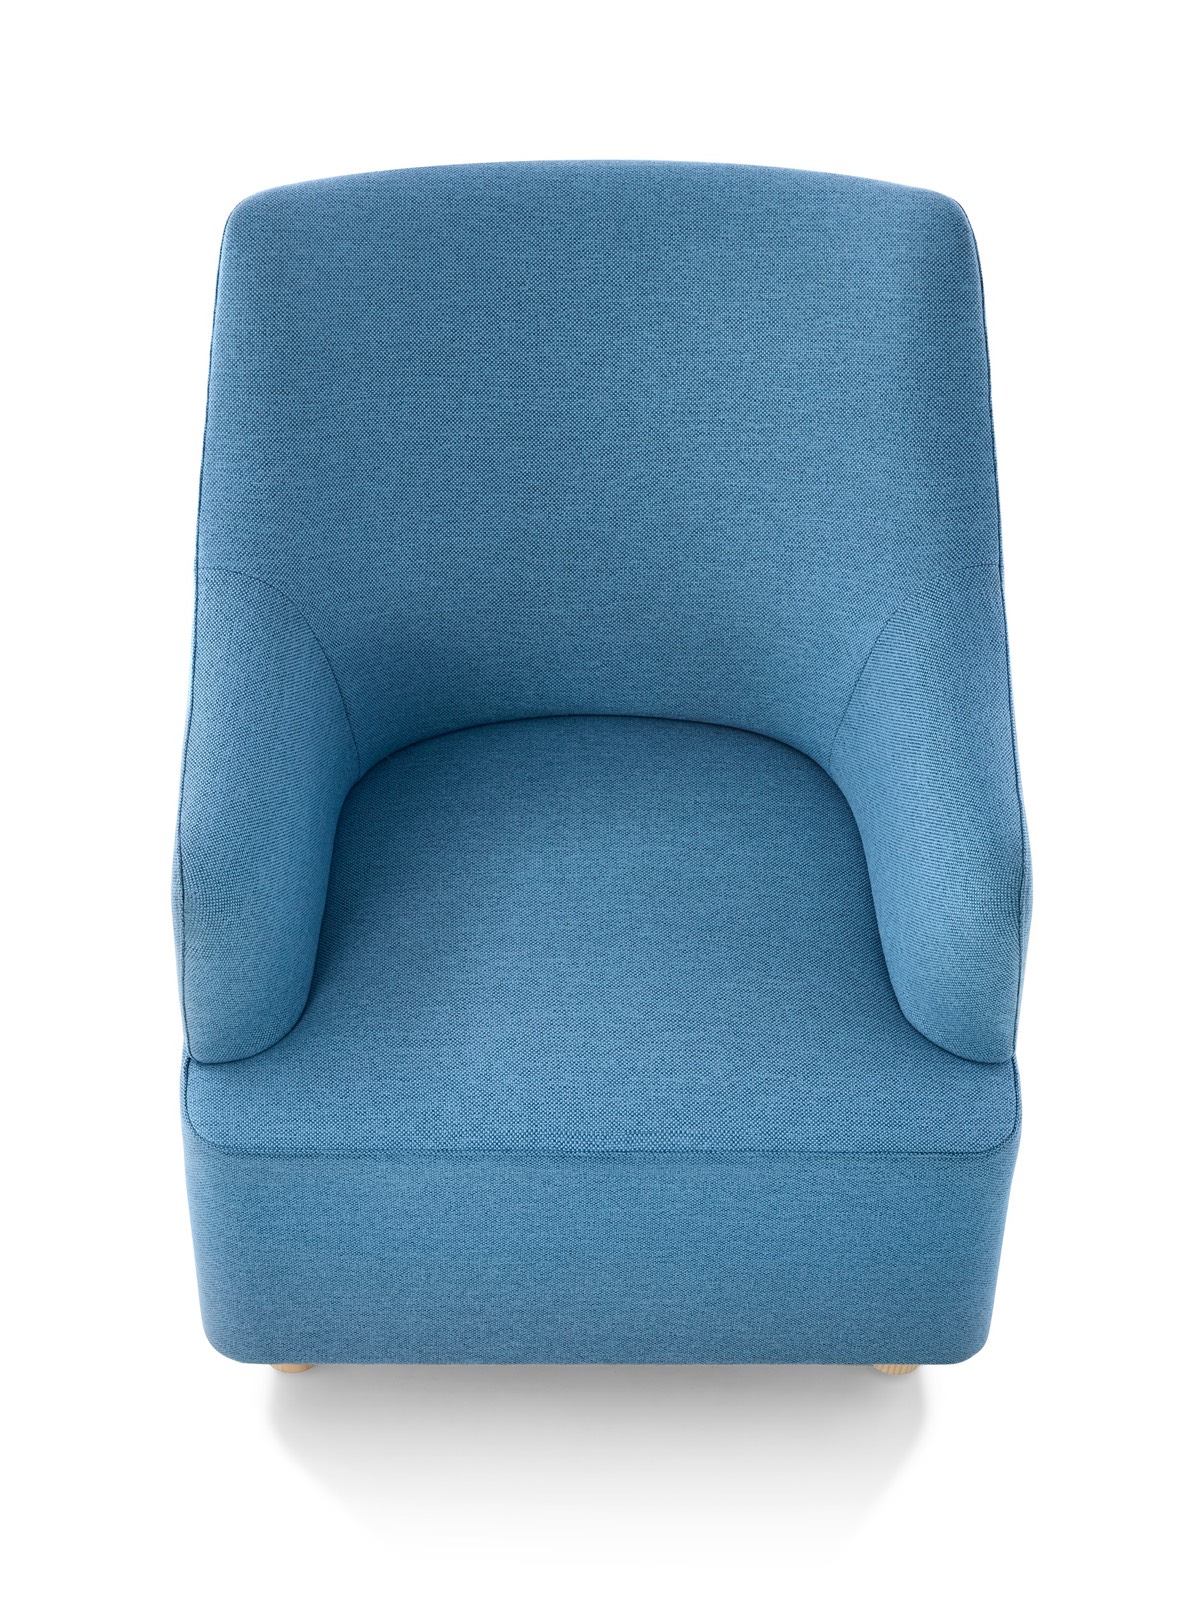 Overhead view of a blue Plex club chair.